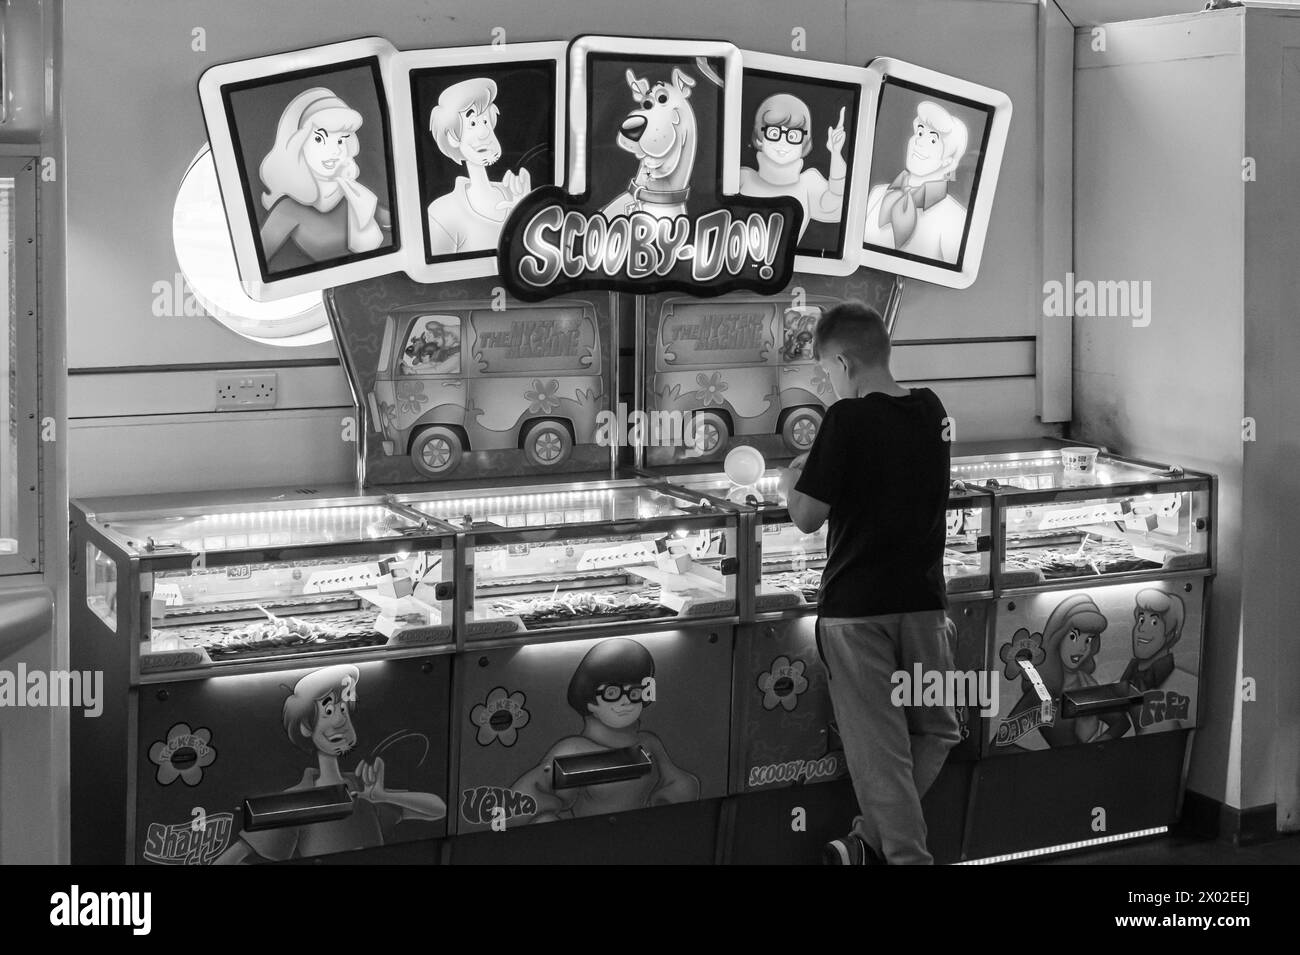 Jeux d'arcade et joueur sur Teignmouth Pier, Devon, Royaume-Uni. Photographie noir et blanc. Banque D'Images